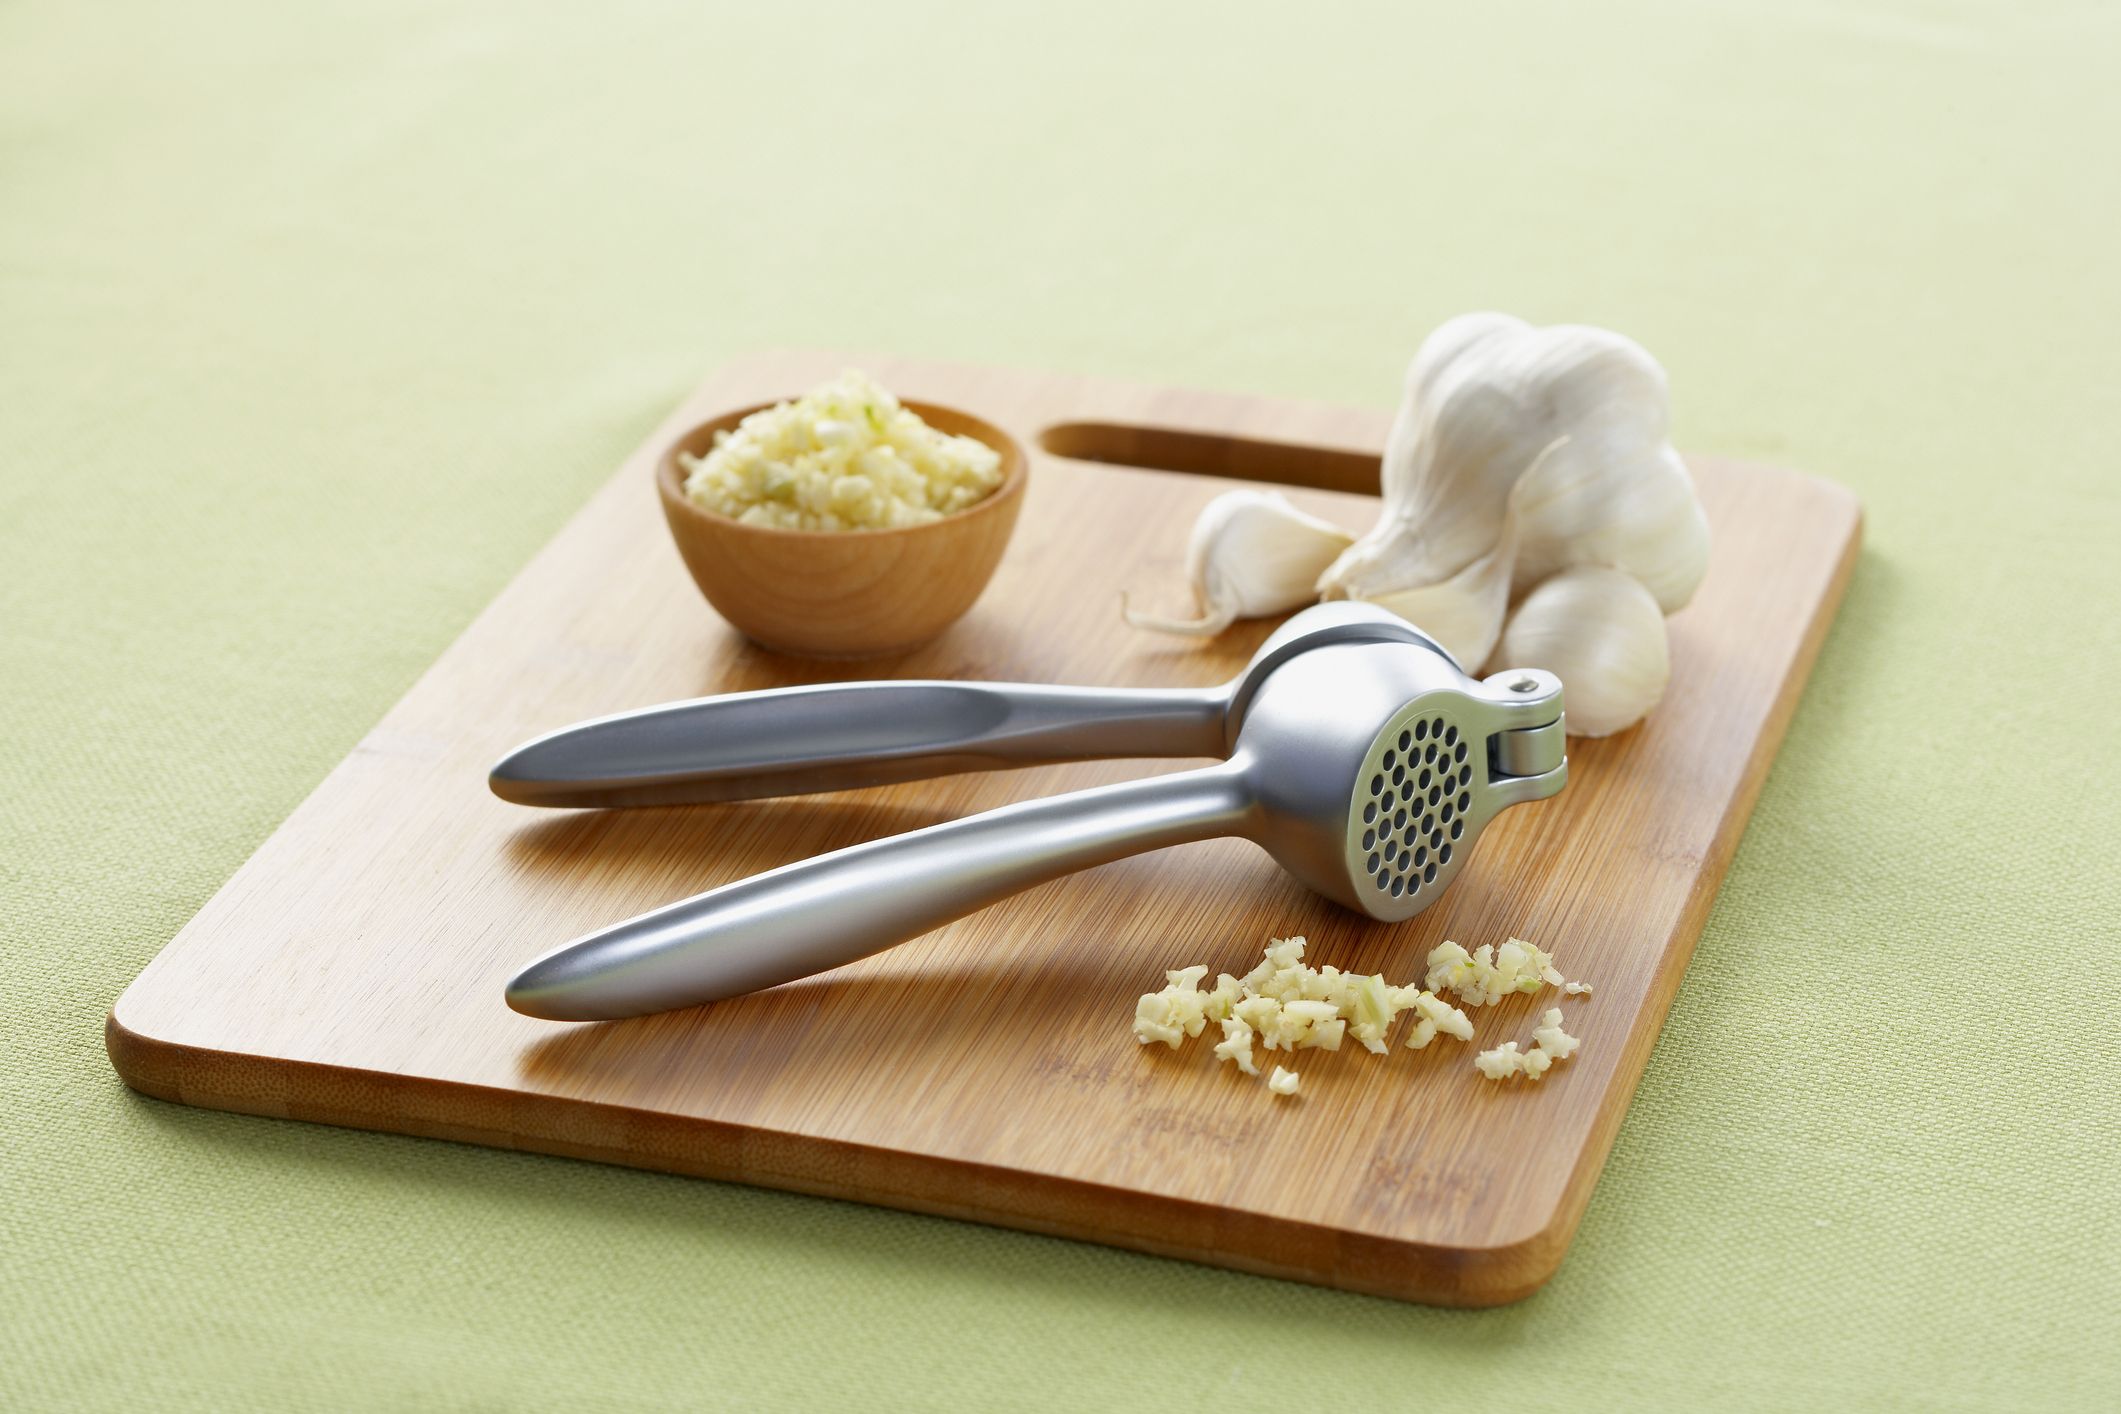 Garlic Mincer Tool - Red - Handheld Garlic Mincing Tool